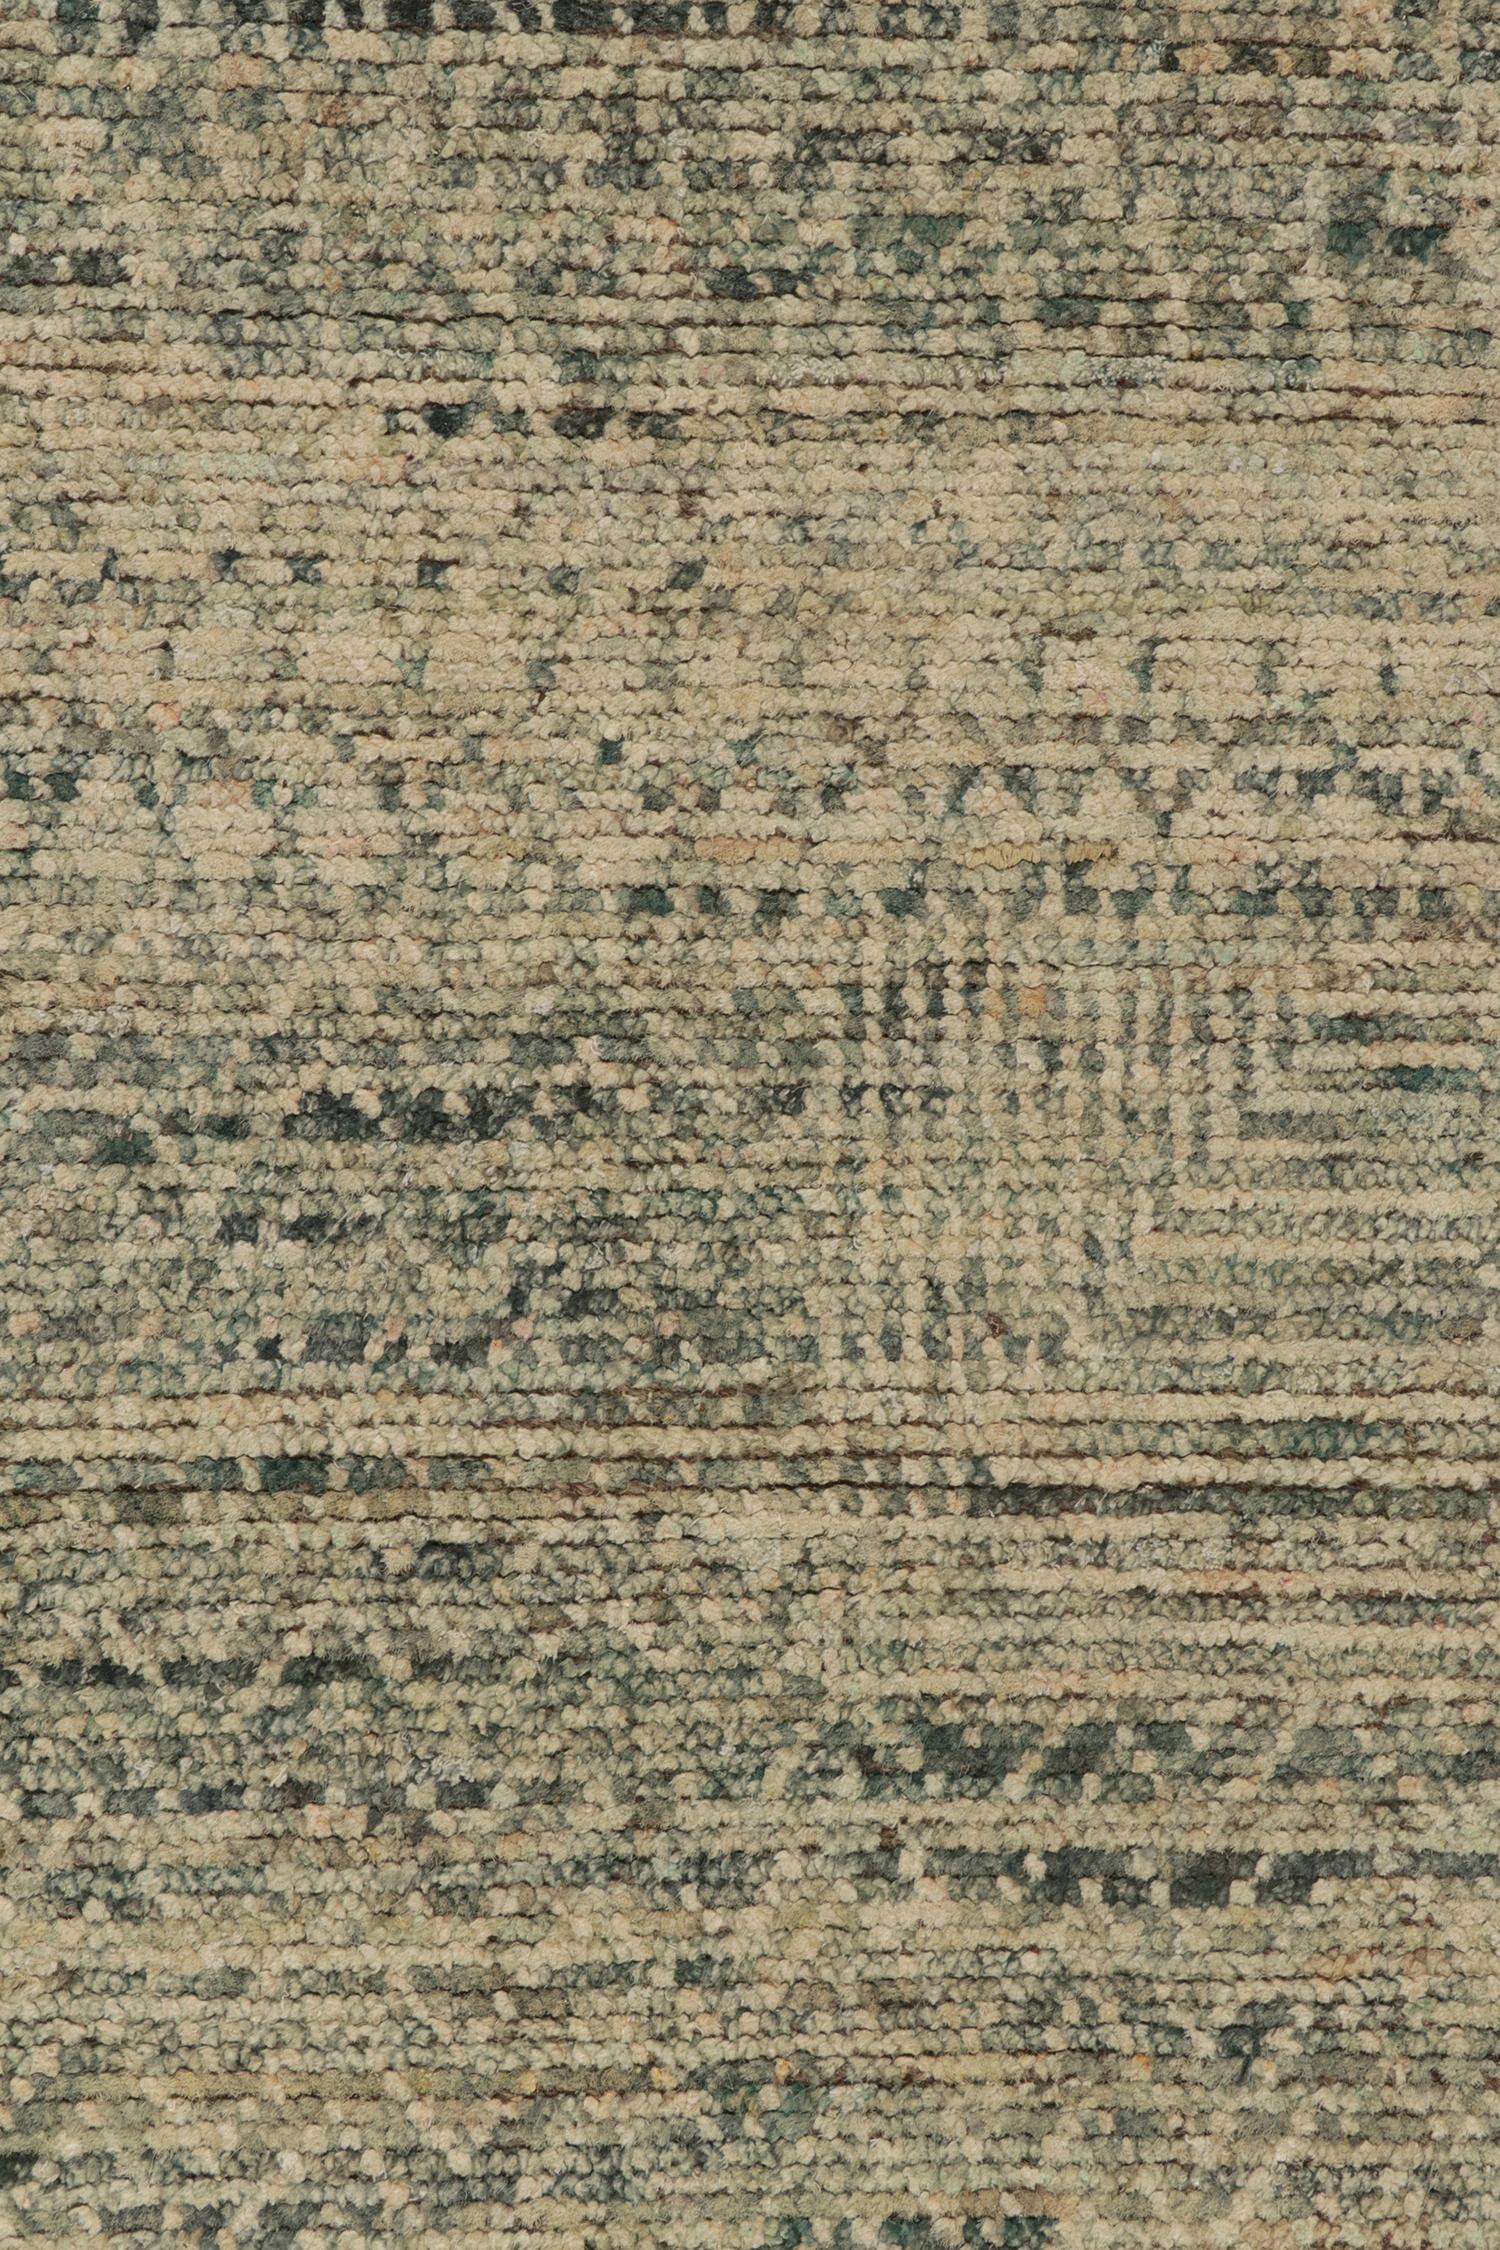 Moderner Teppich von Teppich & Kilims in einem blauen und beigefarbenen Striae, geometrische Muster